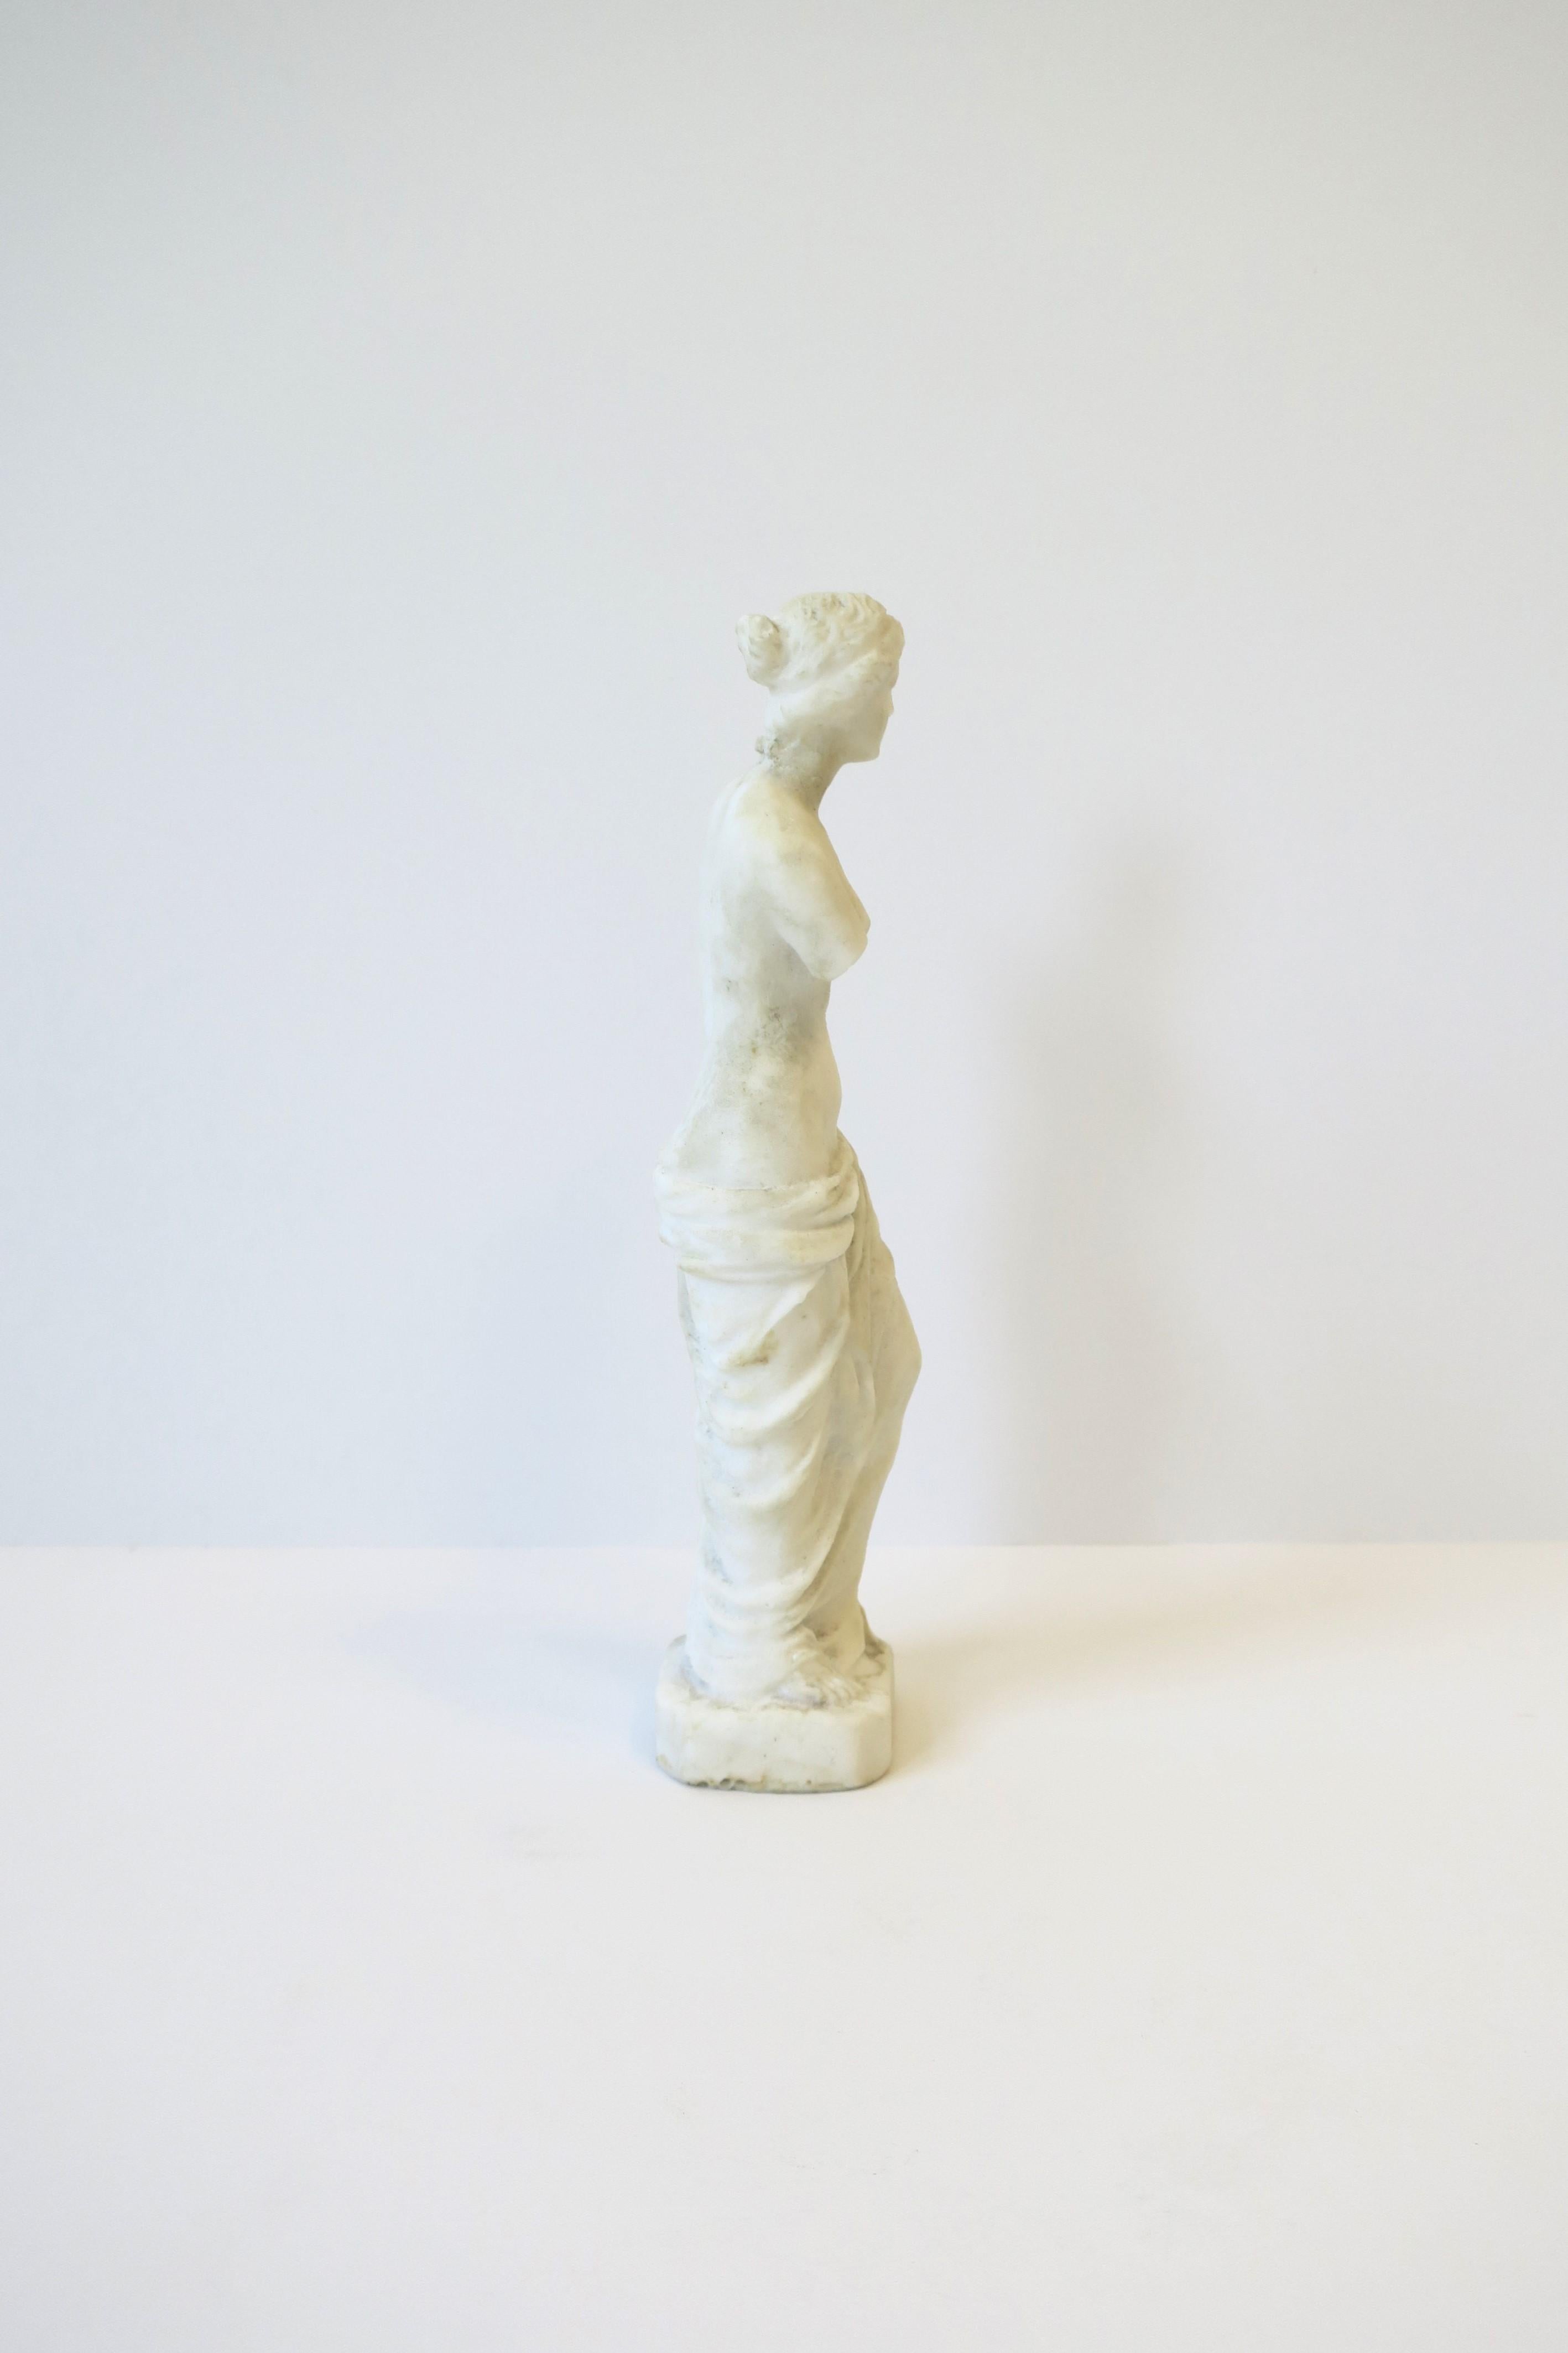 Venus de Milo White Granite Marble Female Figurative Statue Sculpture For Sale 2